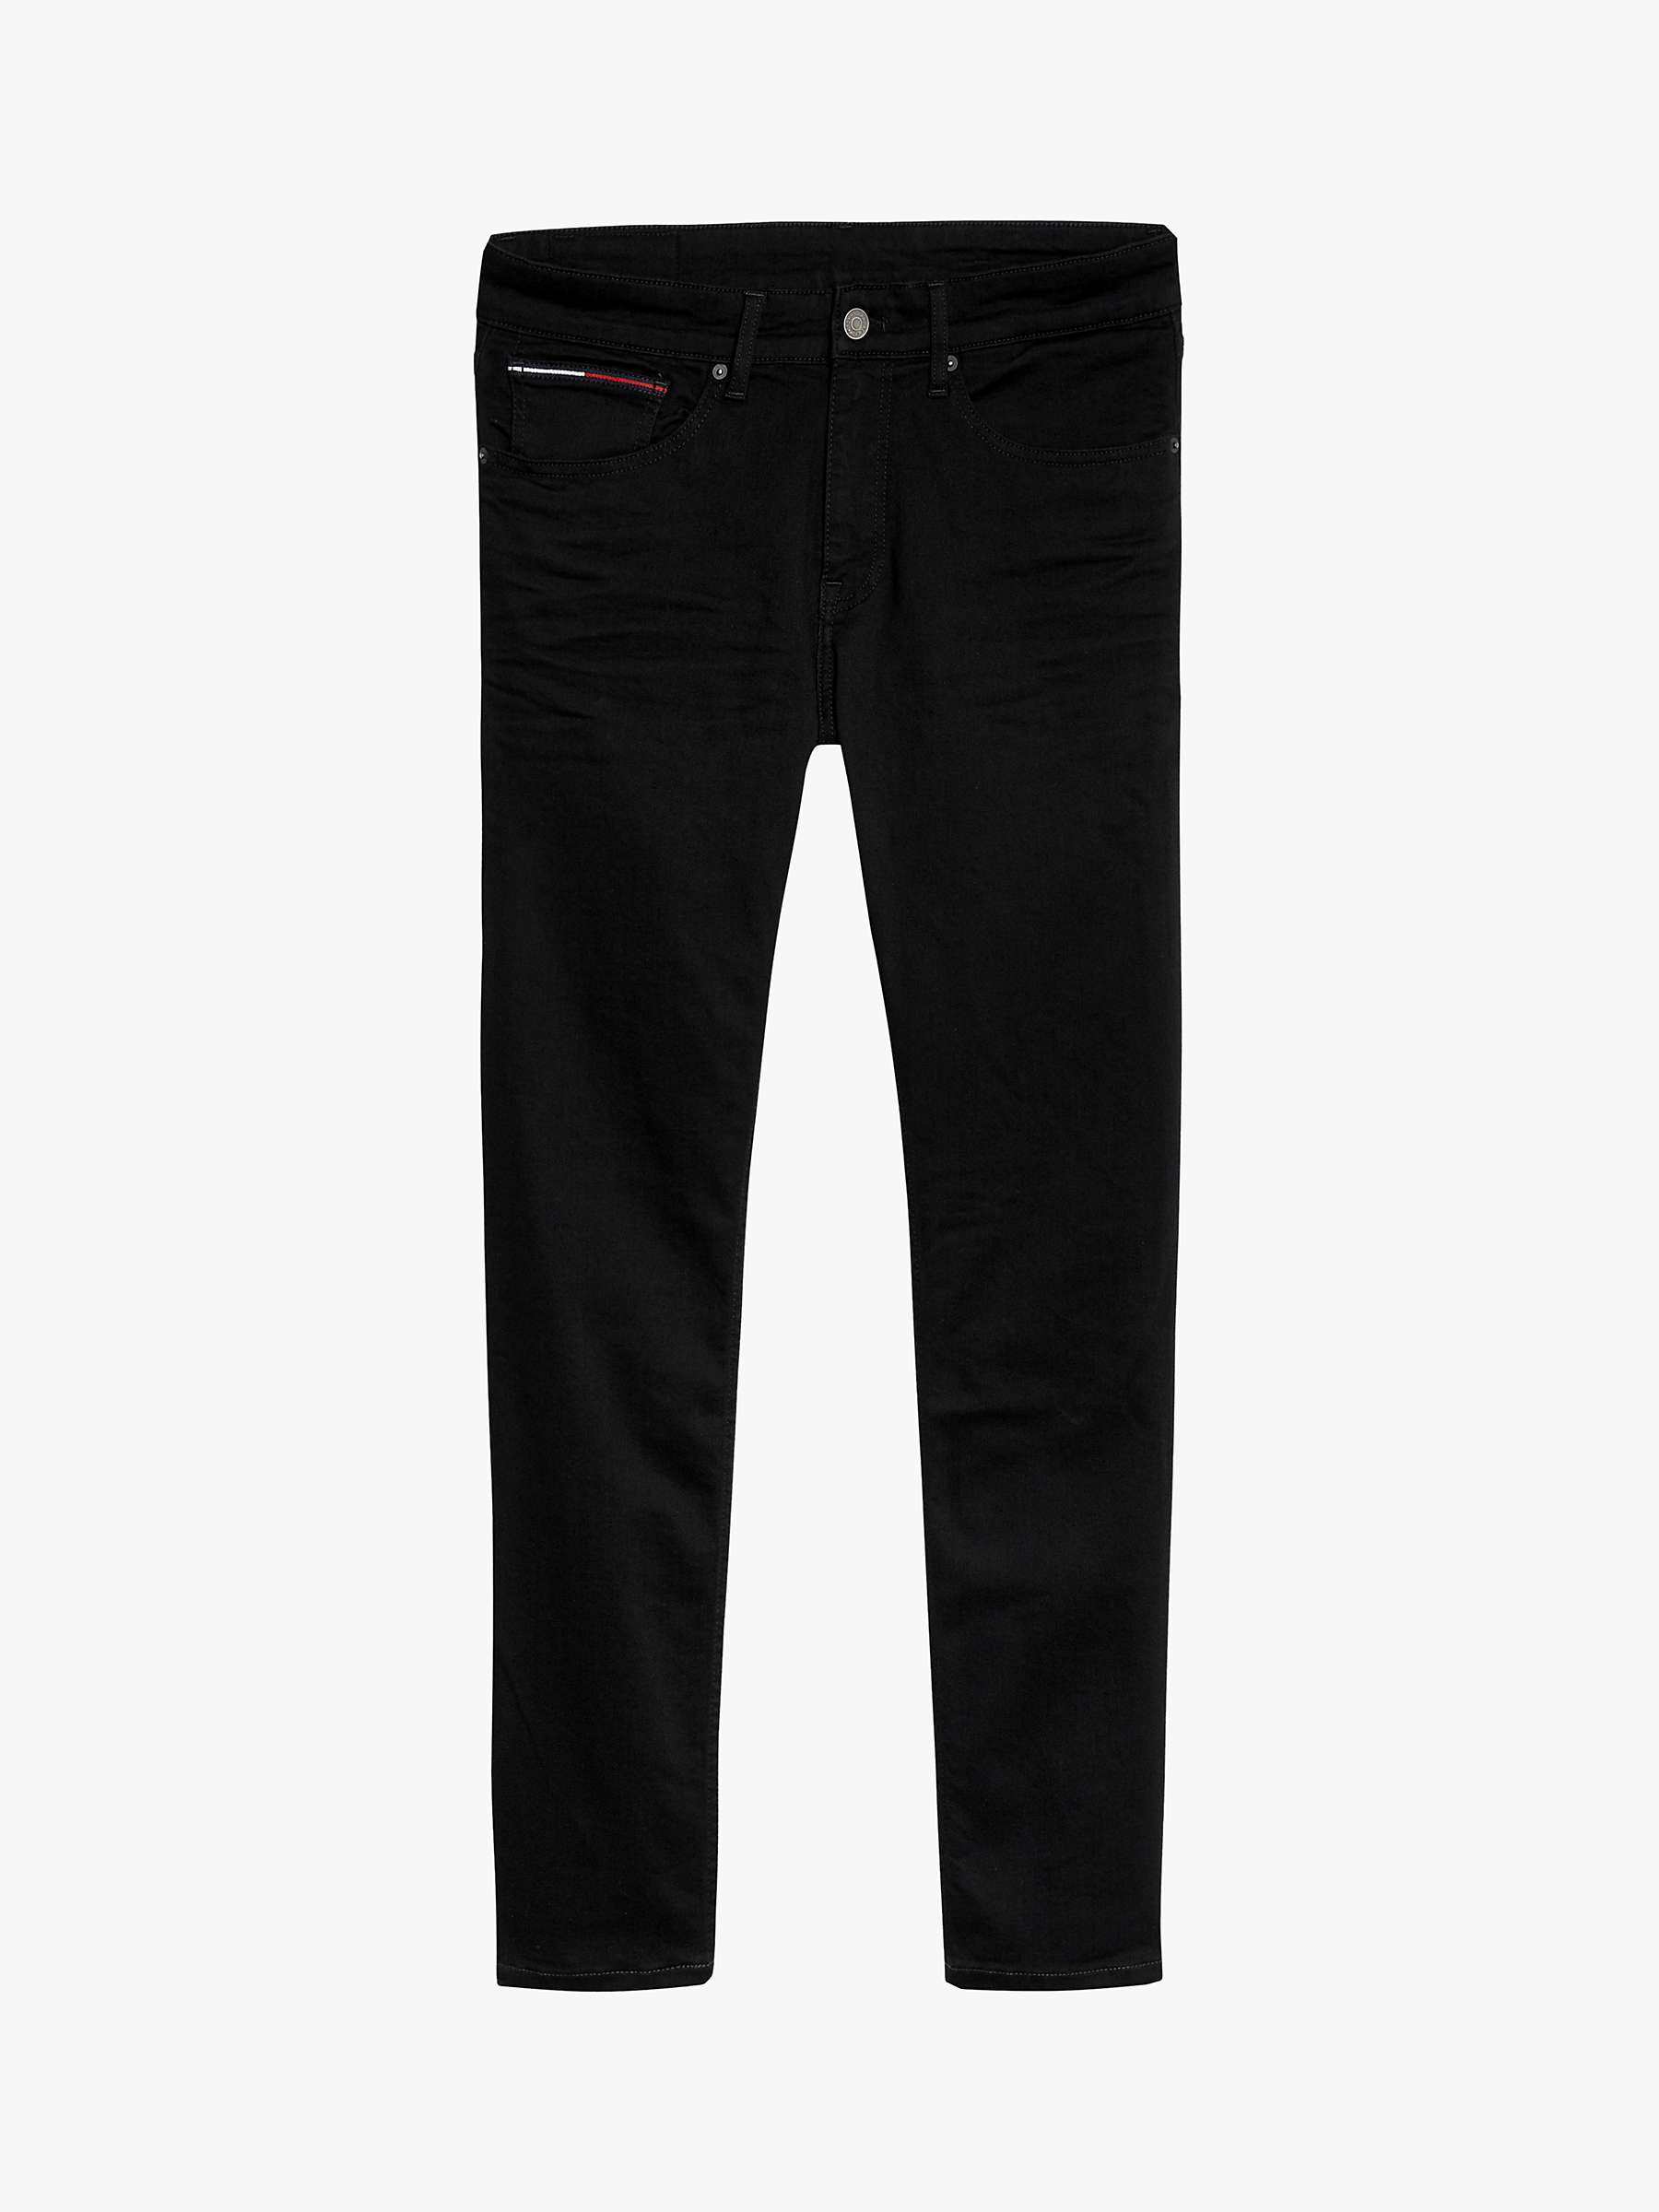 Buy Tommy Jeans Slim Fit Denim Jeans, Black Online at johnlewis.com